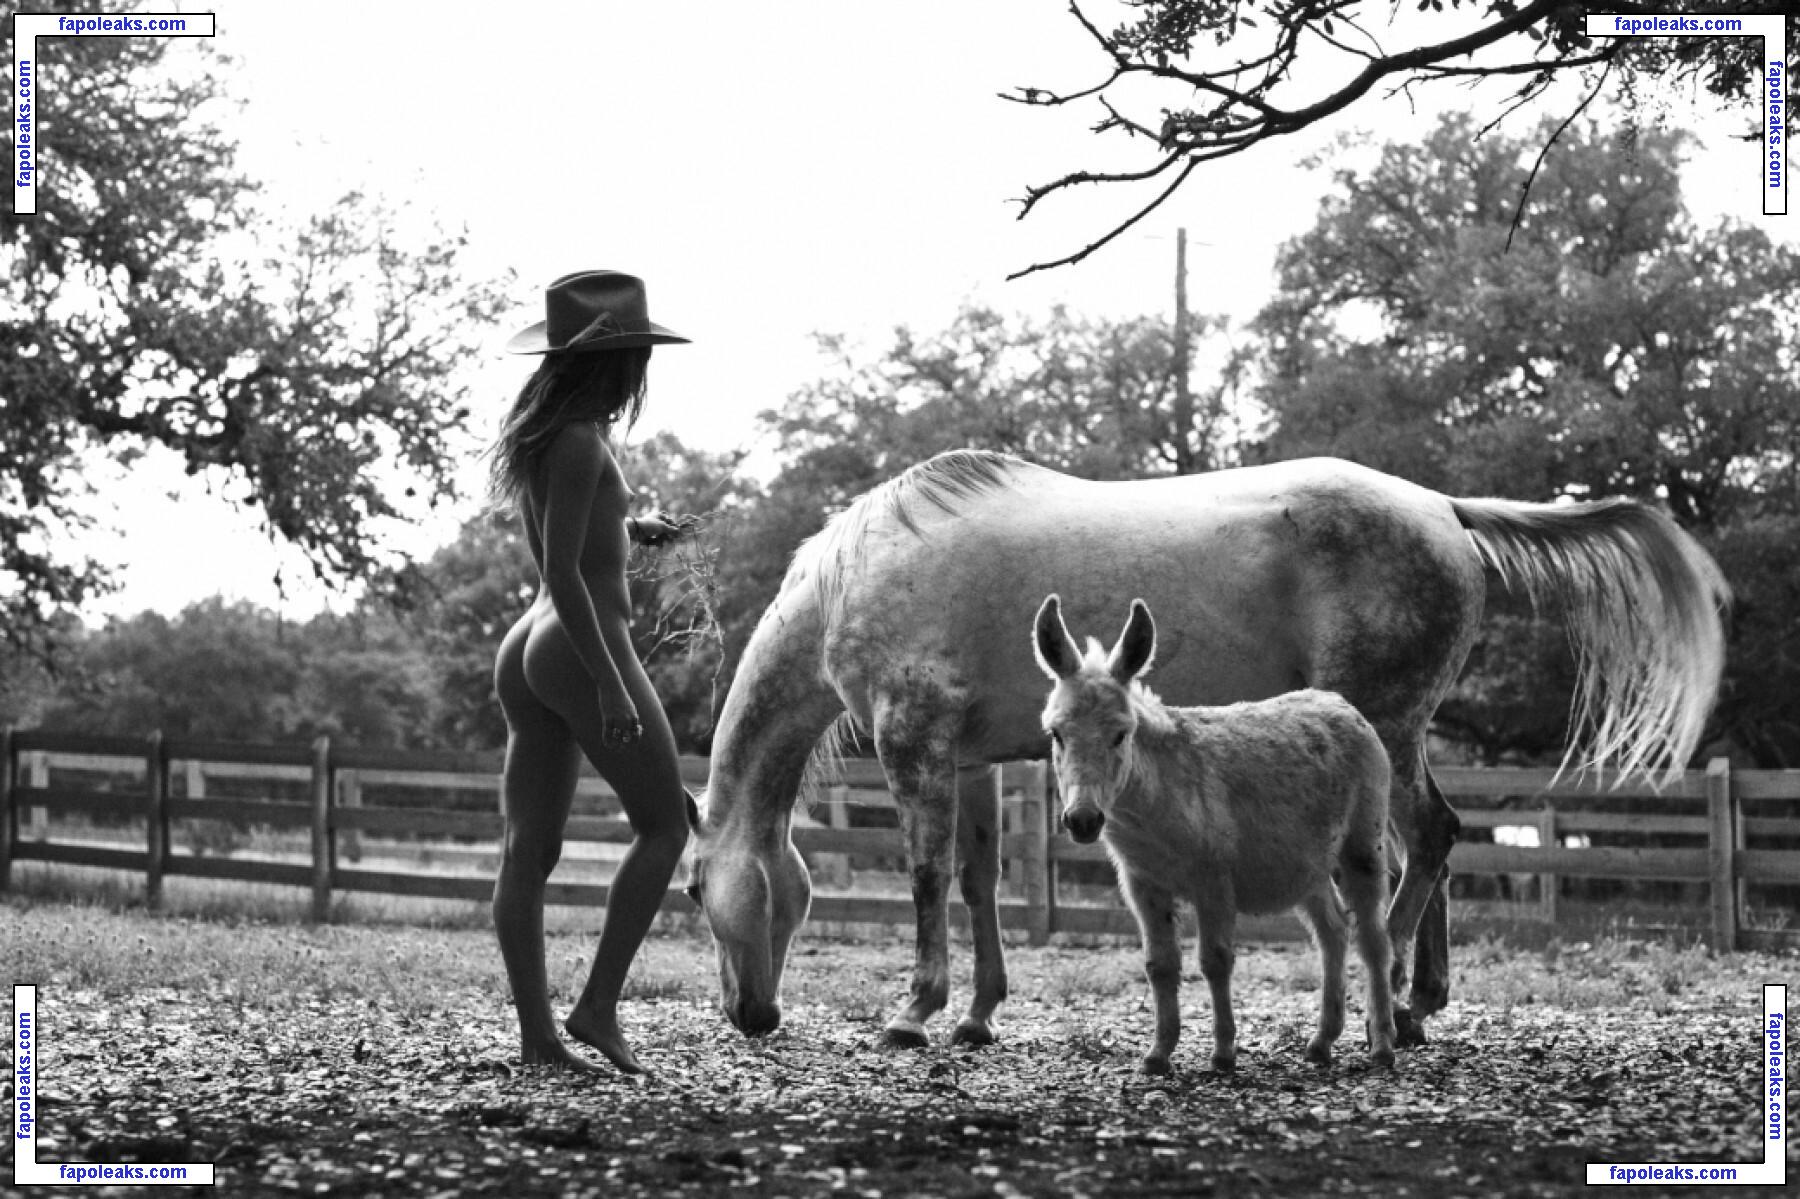 Mimi Elashiry / mimielashiry nude photo #0232 from OnlyFans